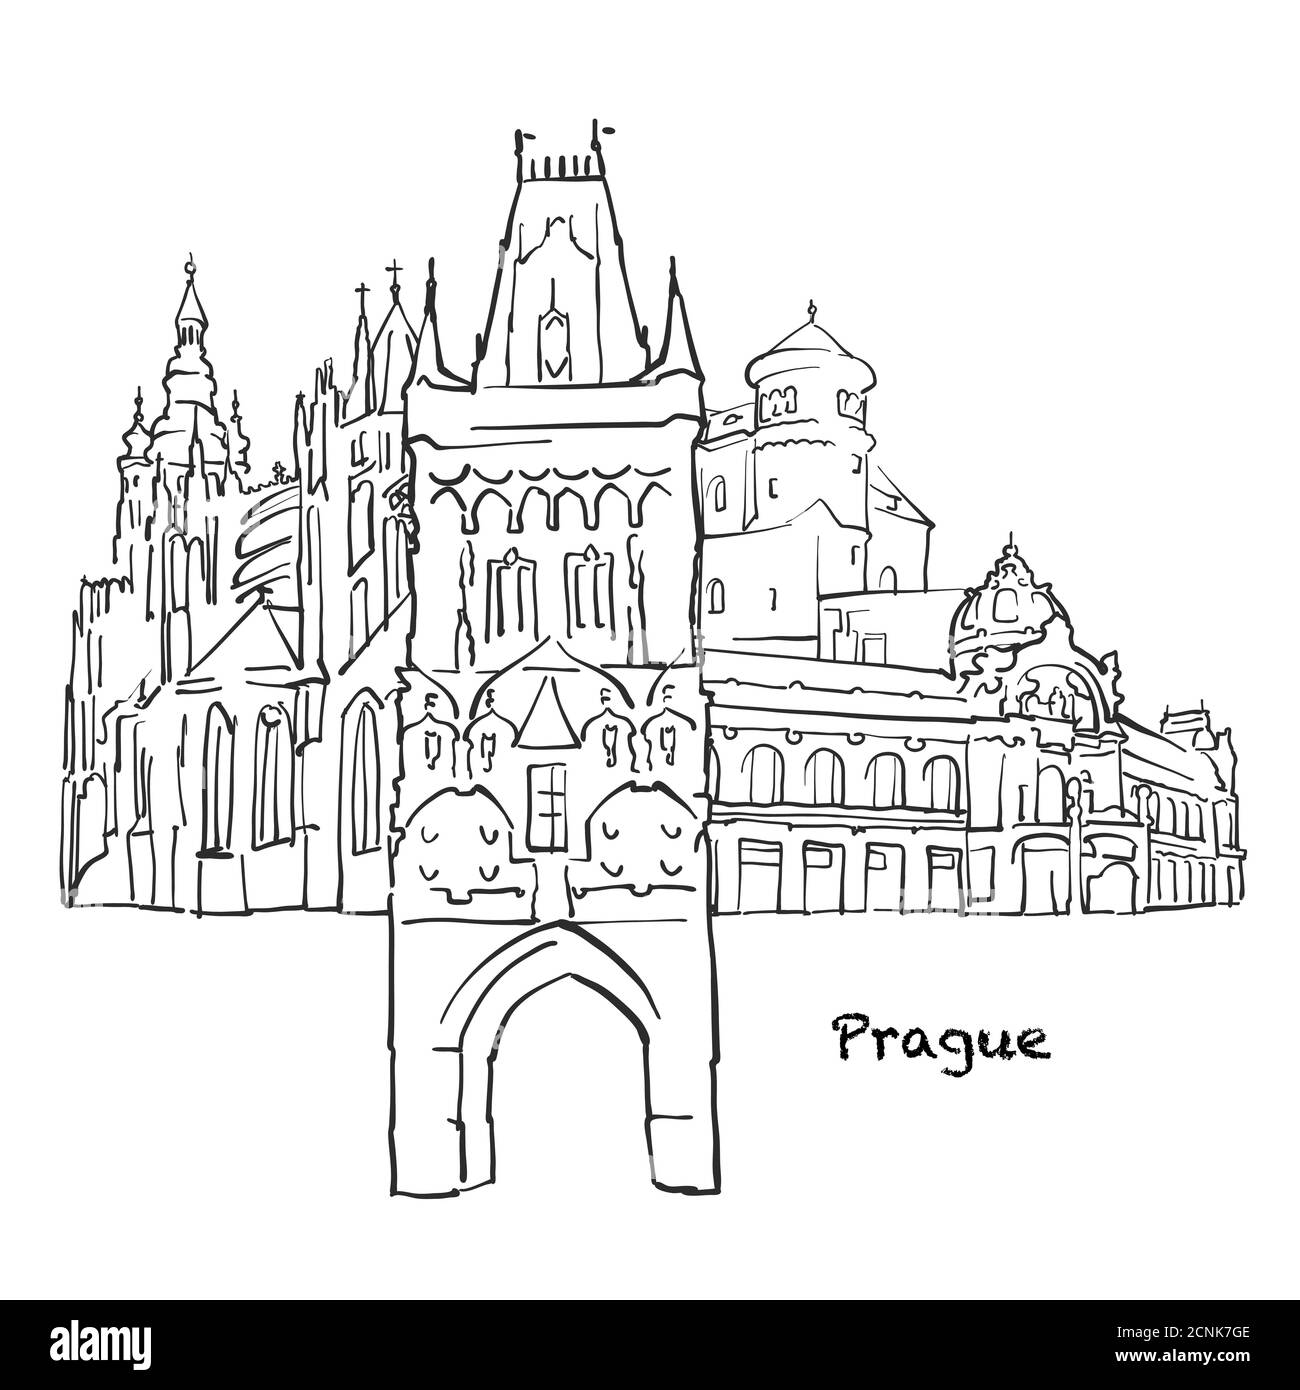 Berühmte Gebäude von Prag, Tschechische Republik Zusammensetzung. Handgezeichnete schwarz-weiße Vektorgrafik. Gruppierte und bewegliche Objekte. Stock Vektor